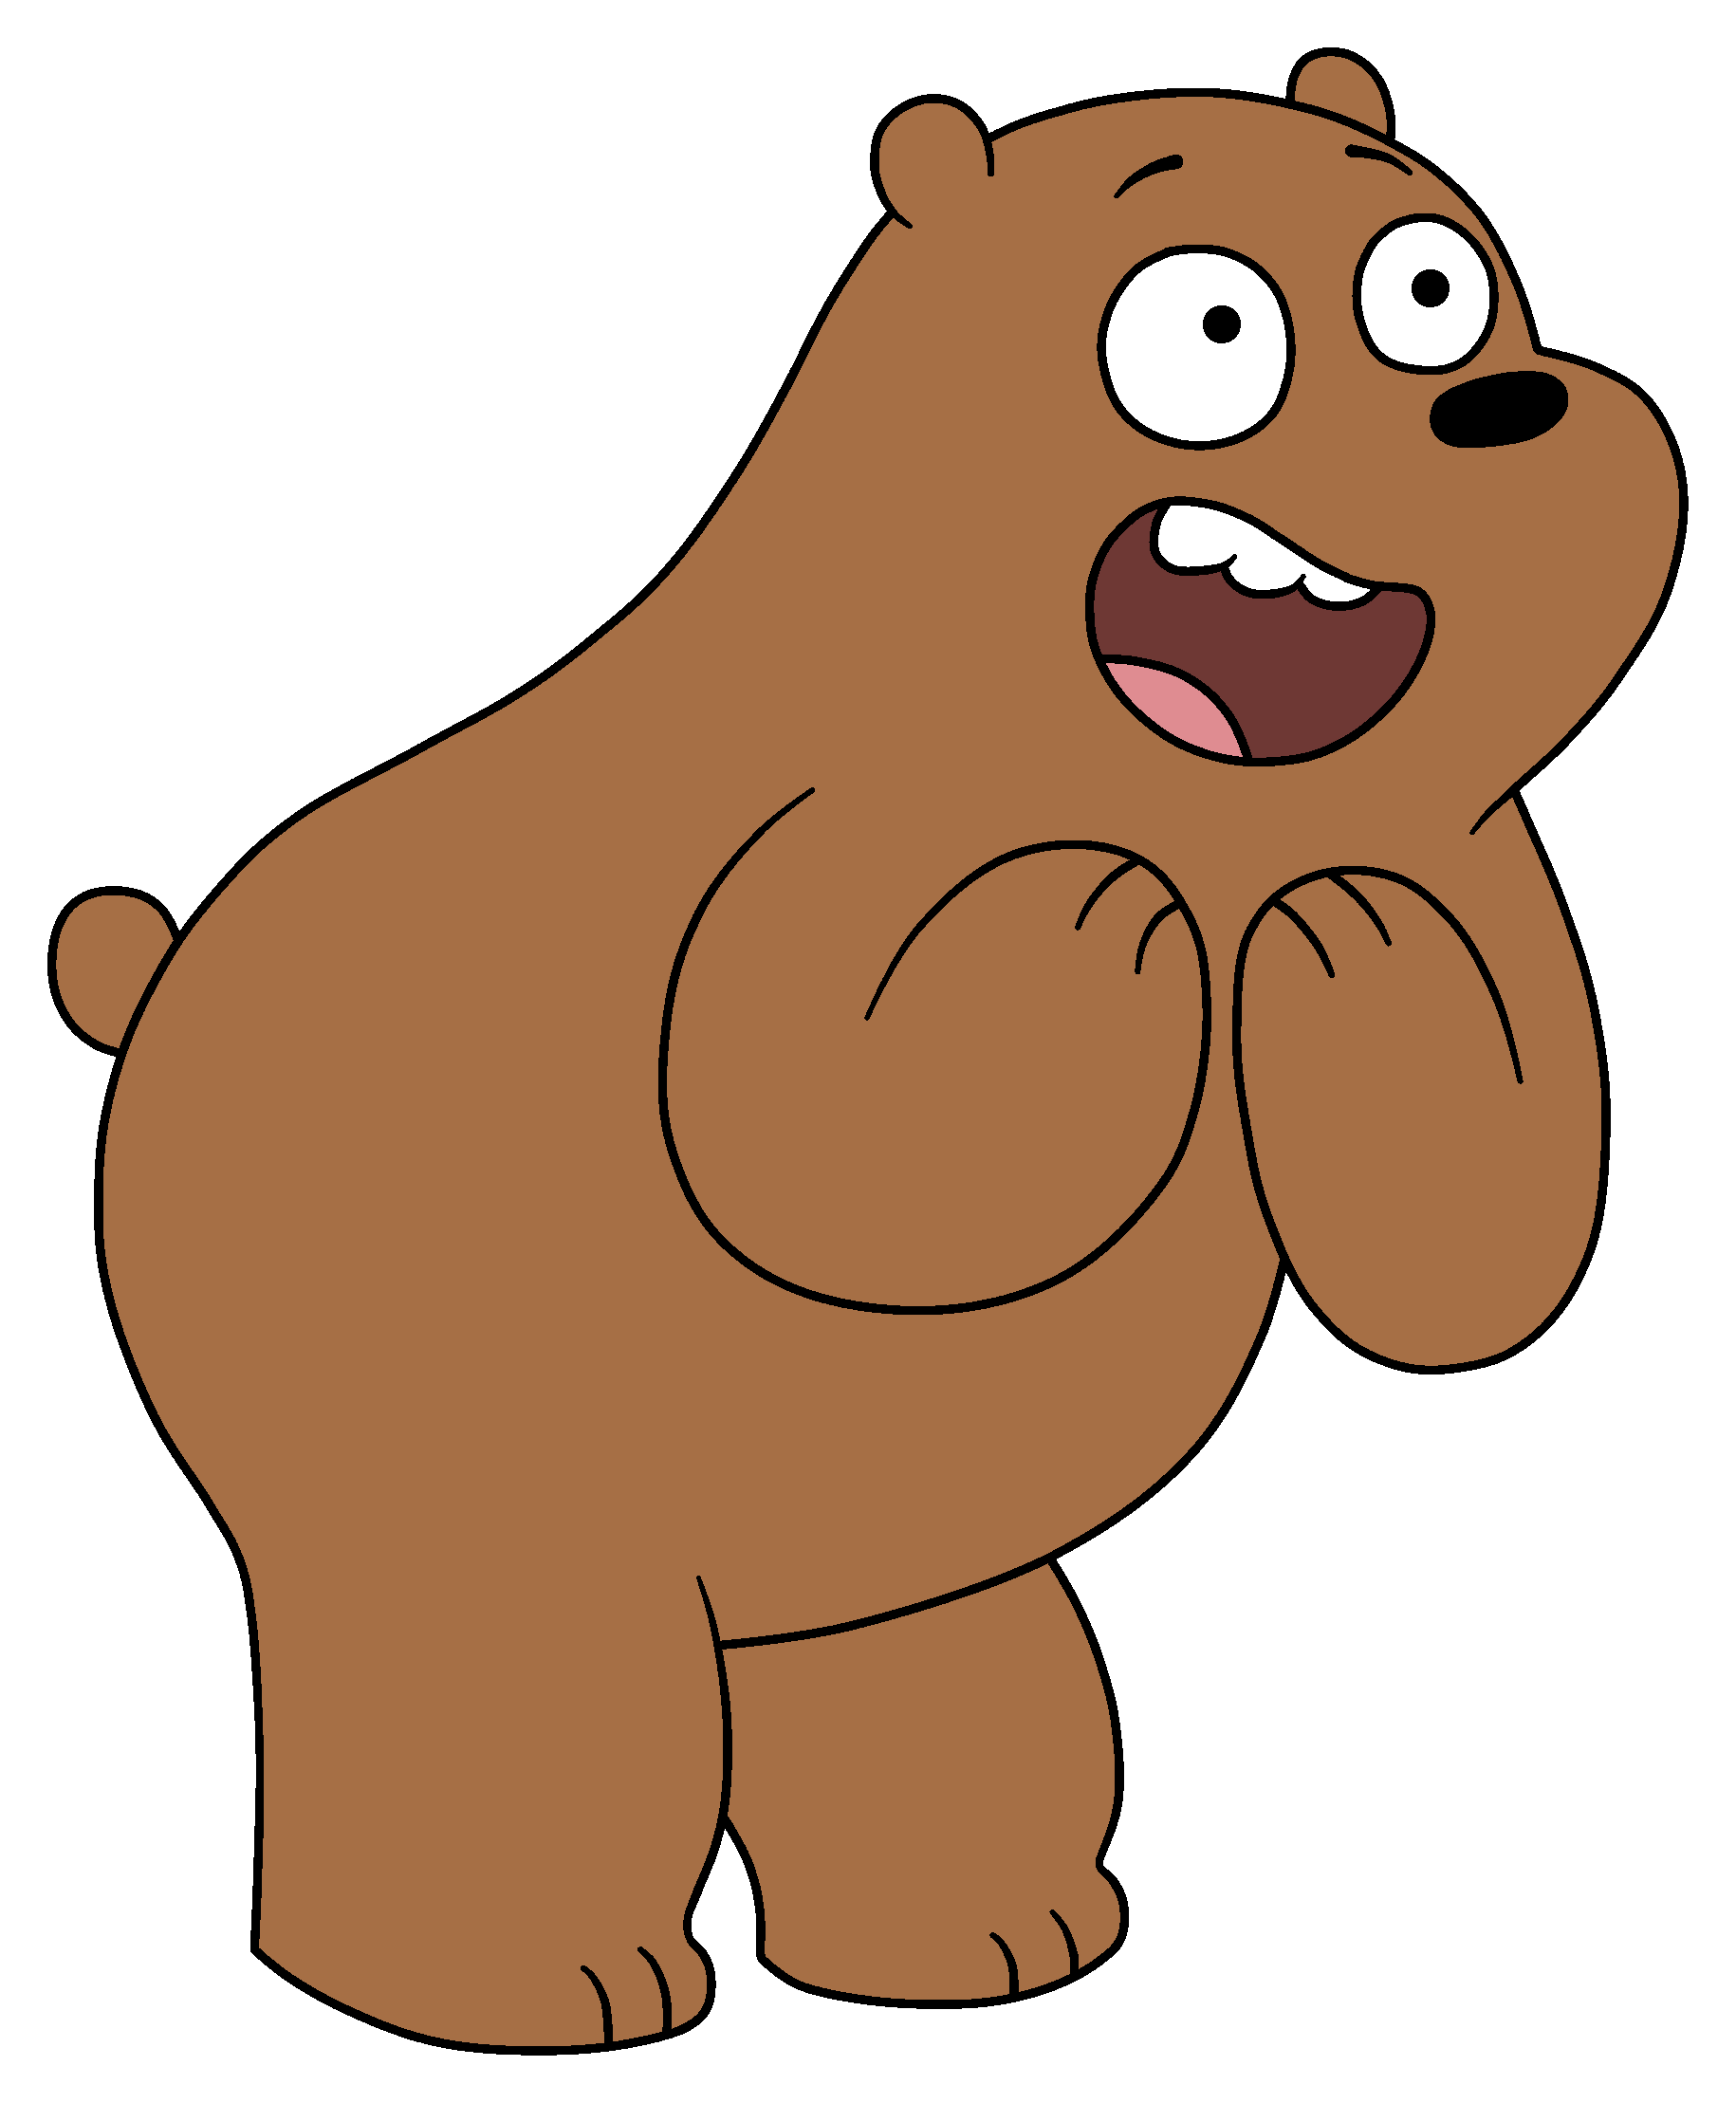 We Bare Bears (cartoon) Bạn là một fan hâm mộ của những chú gấu đáng yêu trong We Bare Bears? Hãy tìm hiểu thêm về những câu chuyện hài hước, bình dị nhưng cảm động của Bắc Cực, Nam Cực và Anh Cực. Những hình ảnh đặc sắc với đầy tính bi hài của các nhân vật sẽ làm bạn không khỏi cười nghiêng ngả.